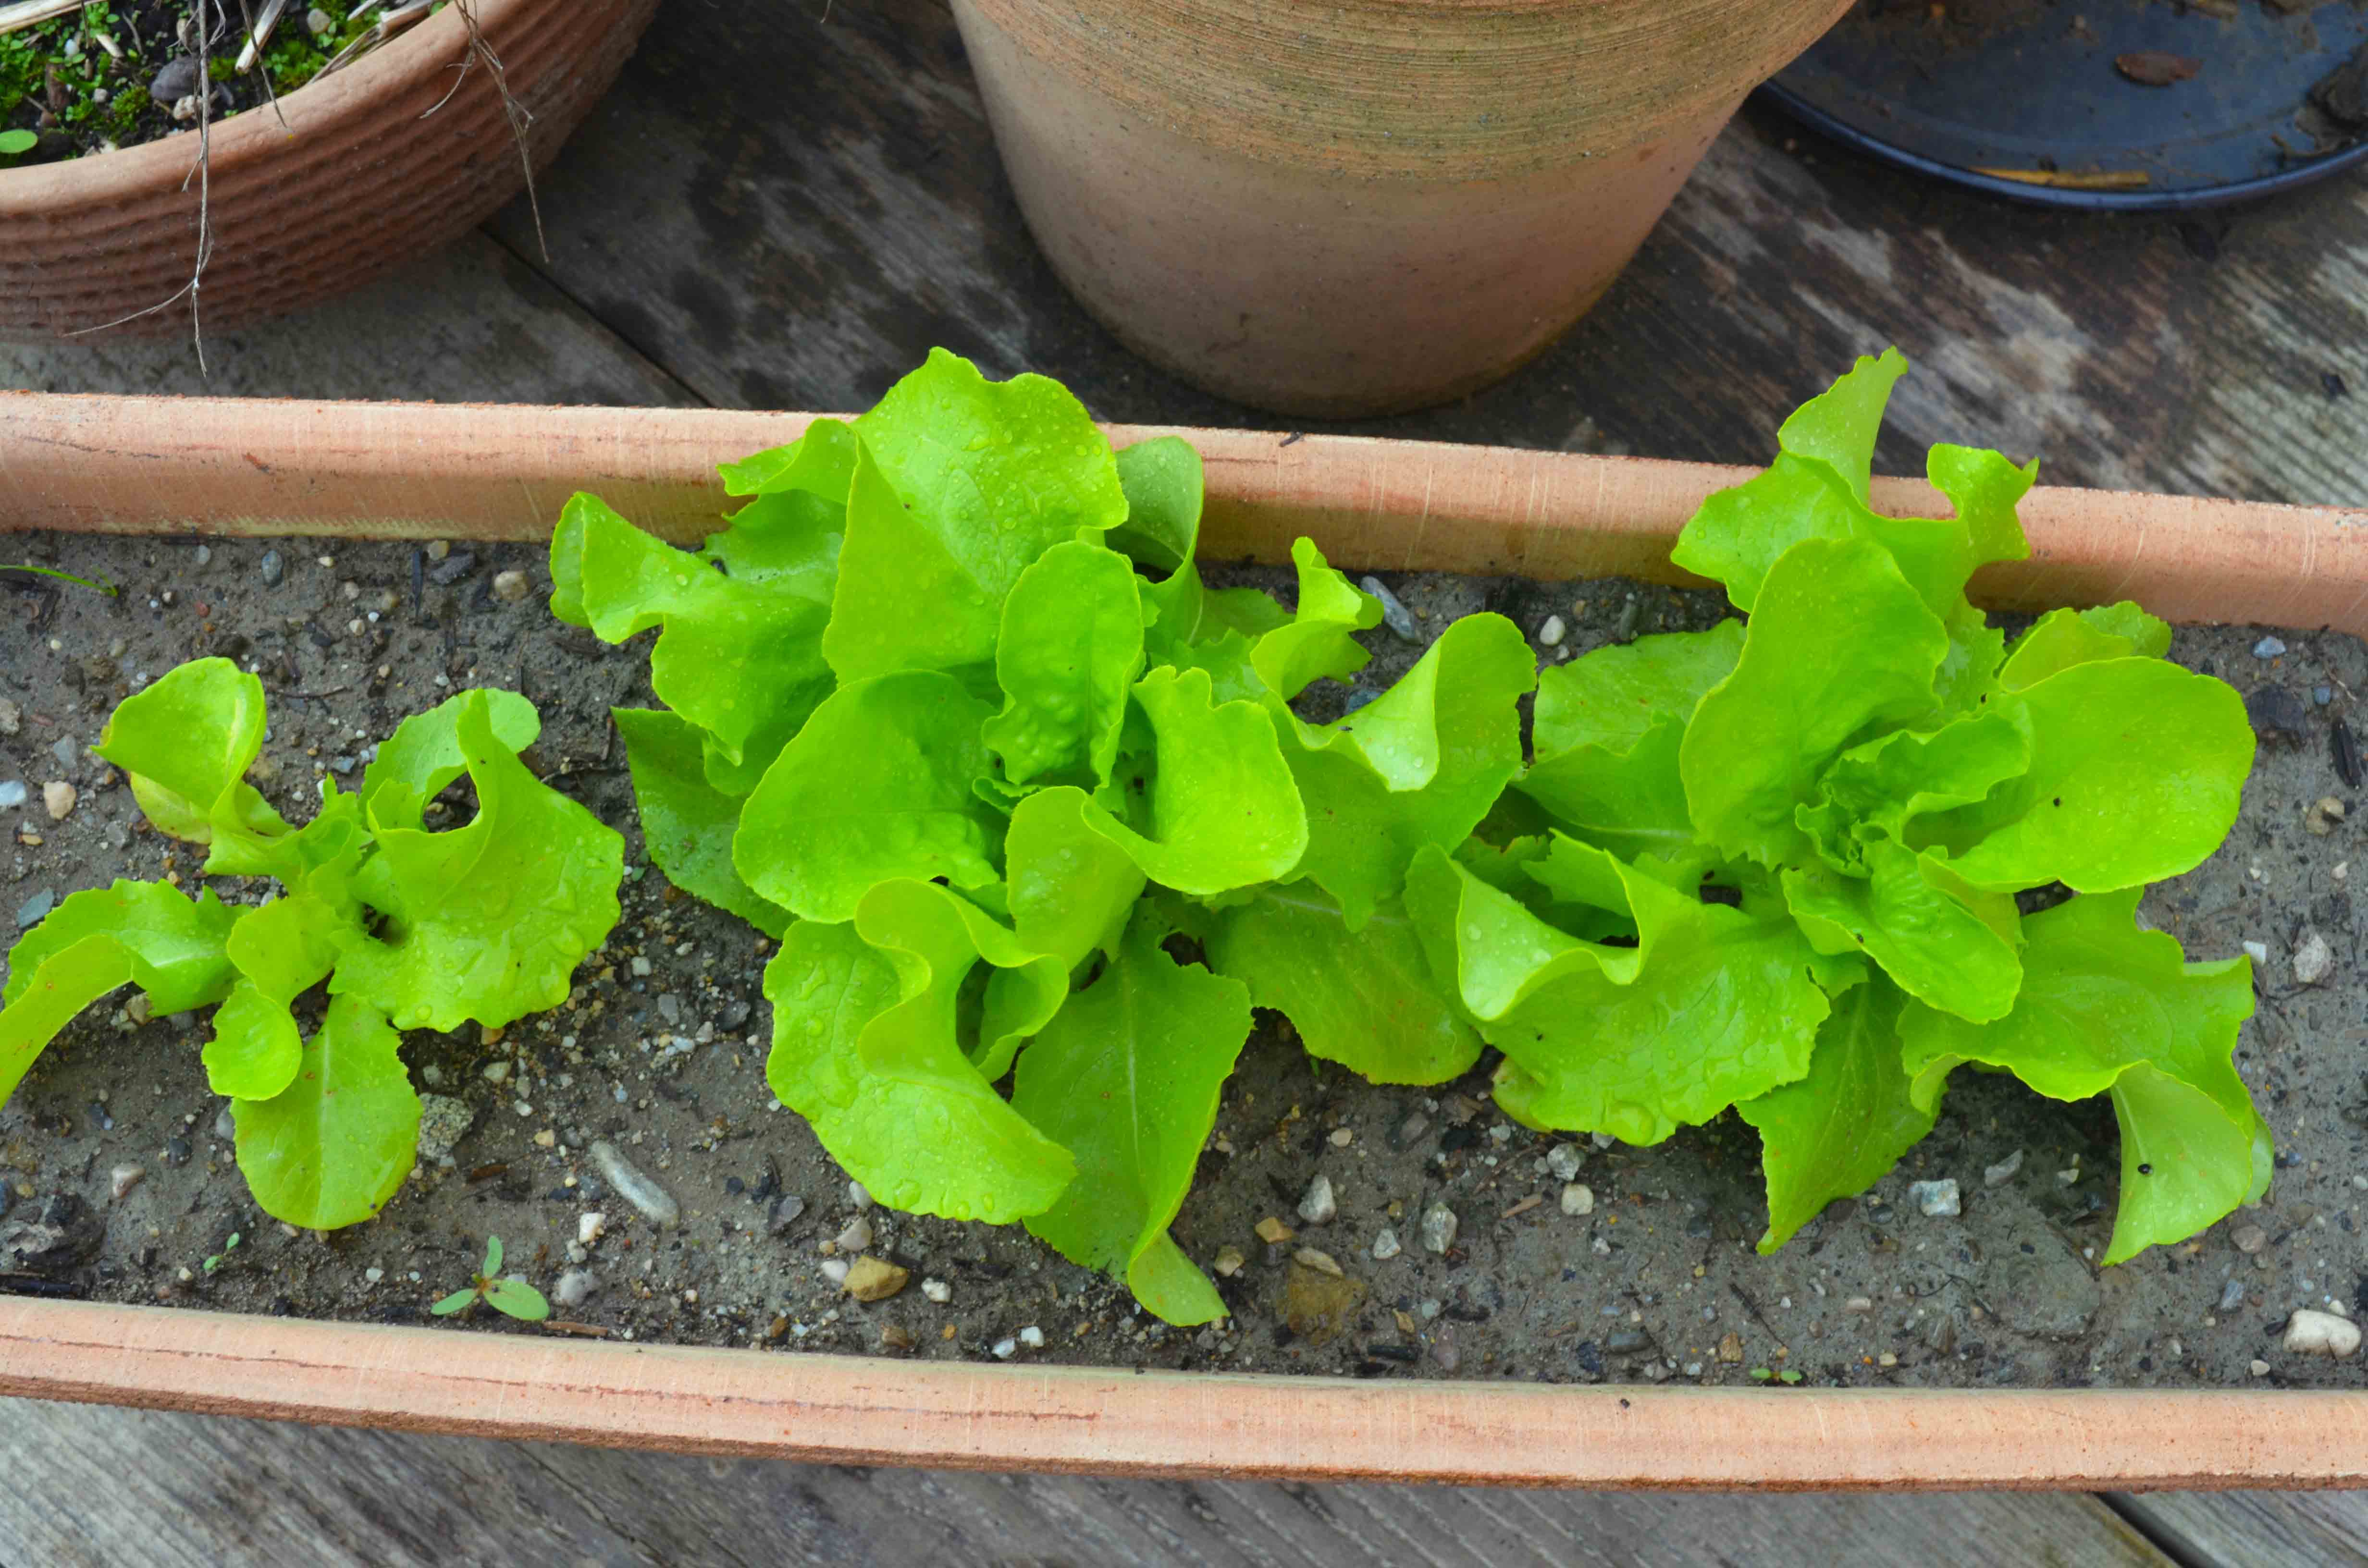 Salat anbauen einfach bei dir daheim! - Haus und Beet